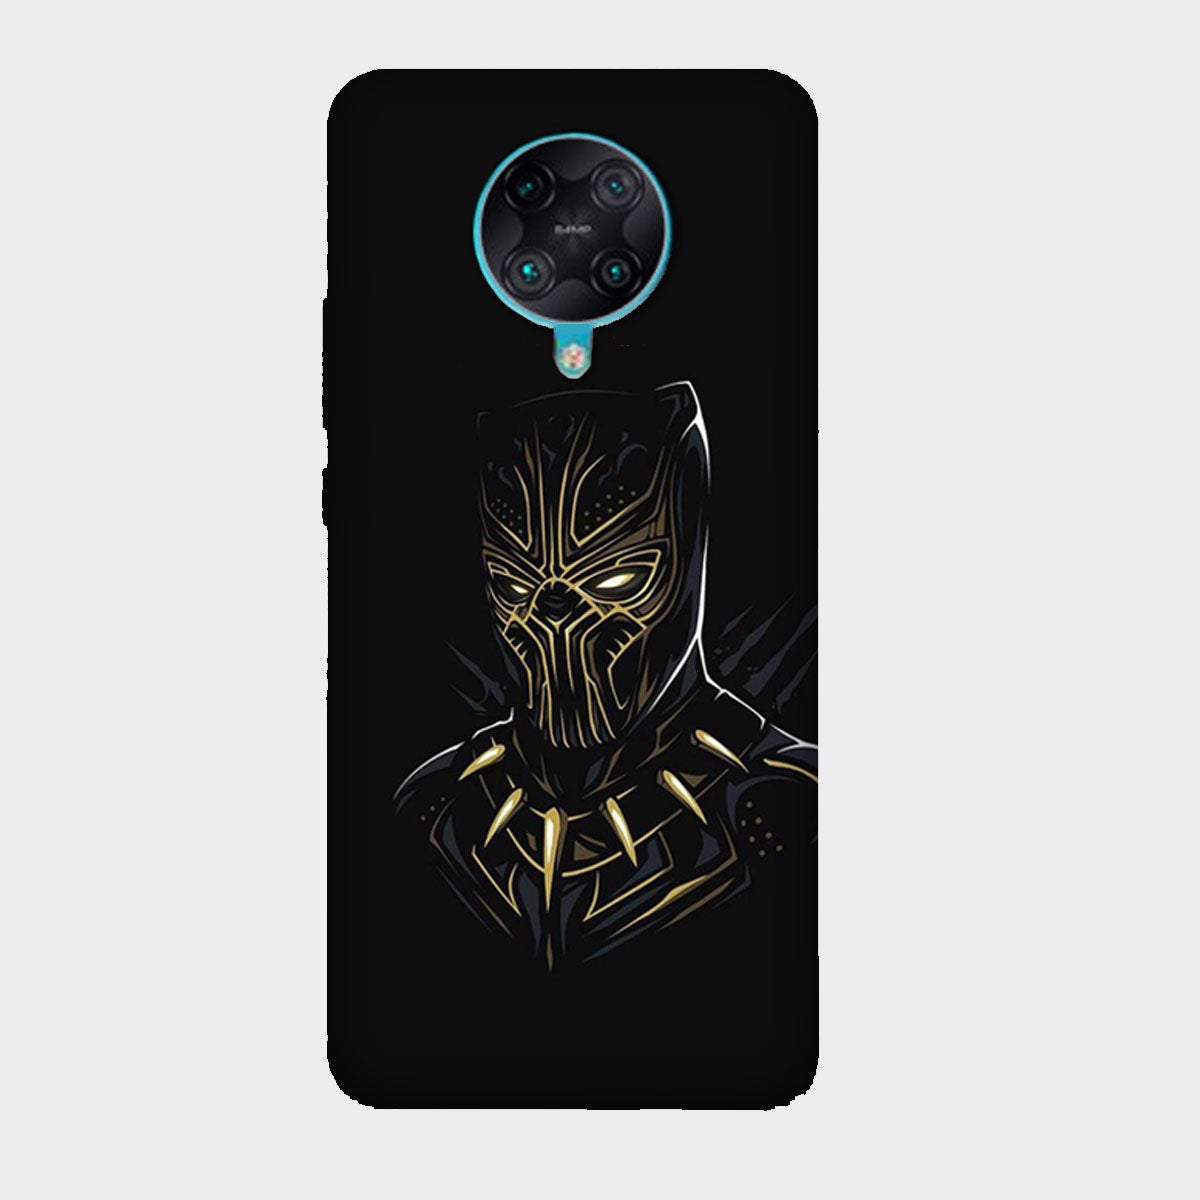 Black Panther - Golden & Black - Mobile Phone Cover - Hard Case